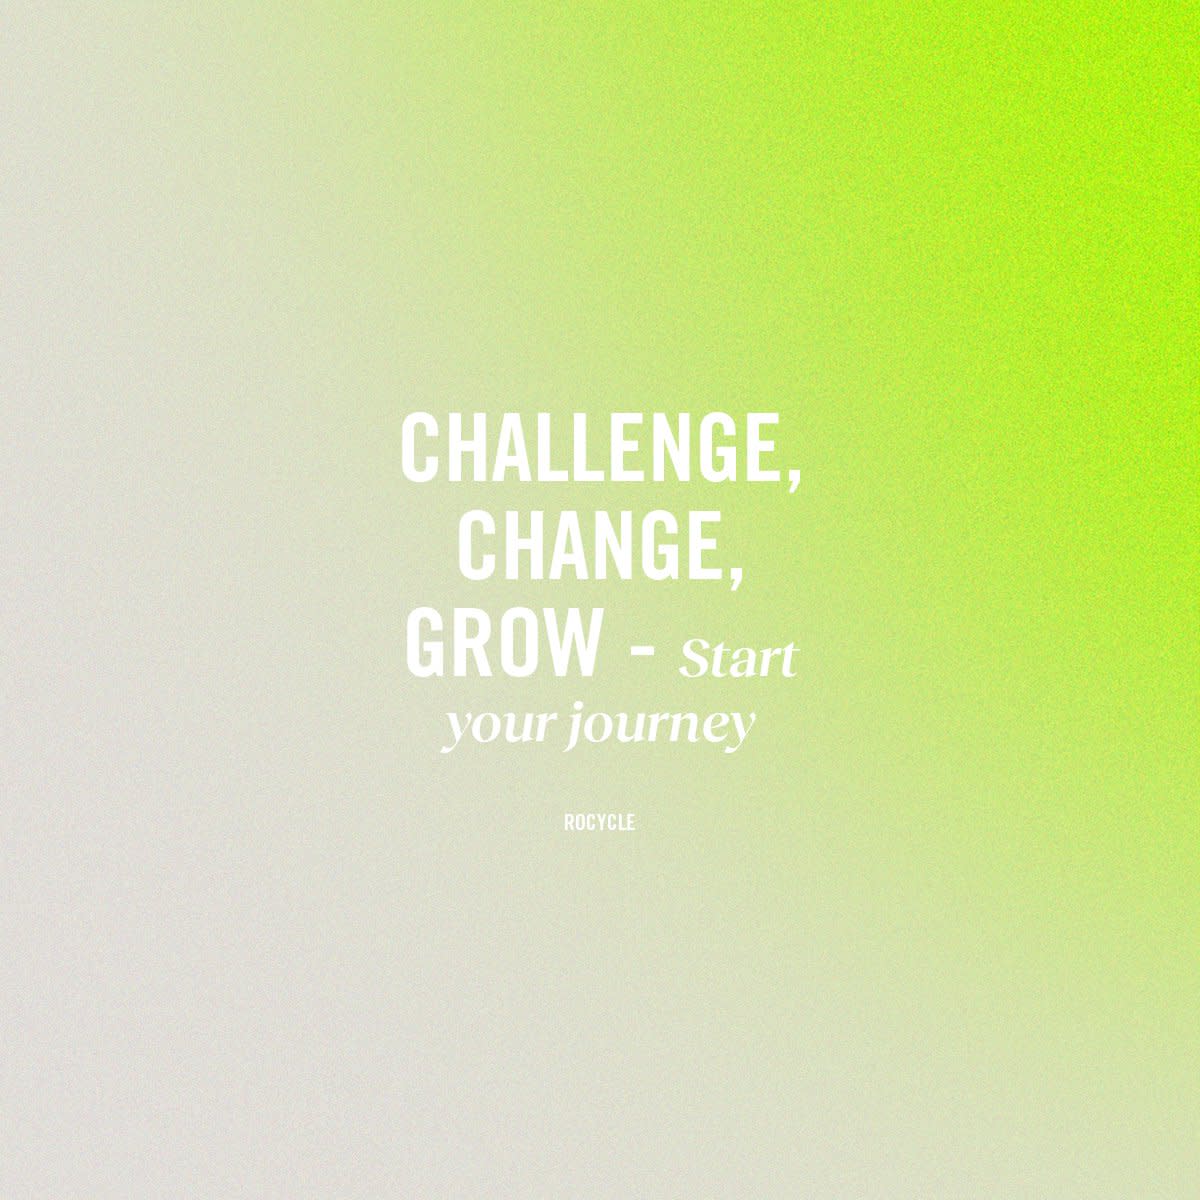 Challenge. Change. Grow.